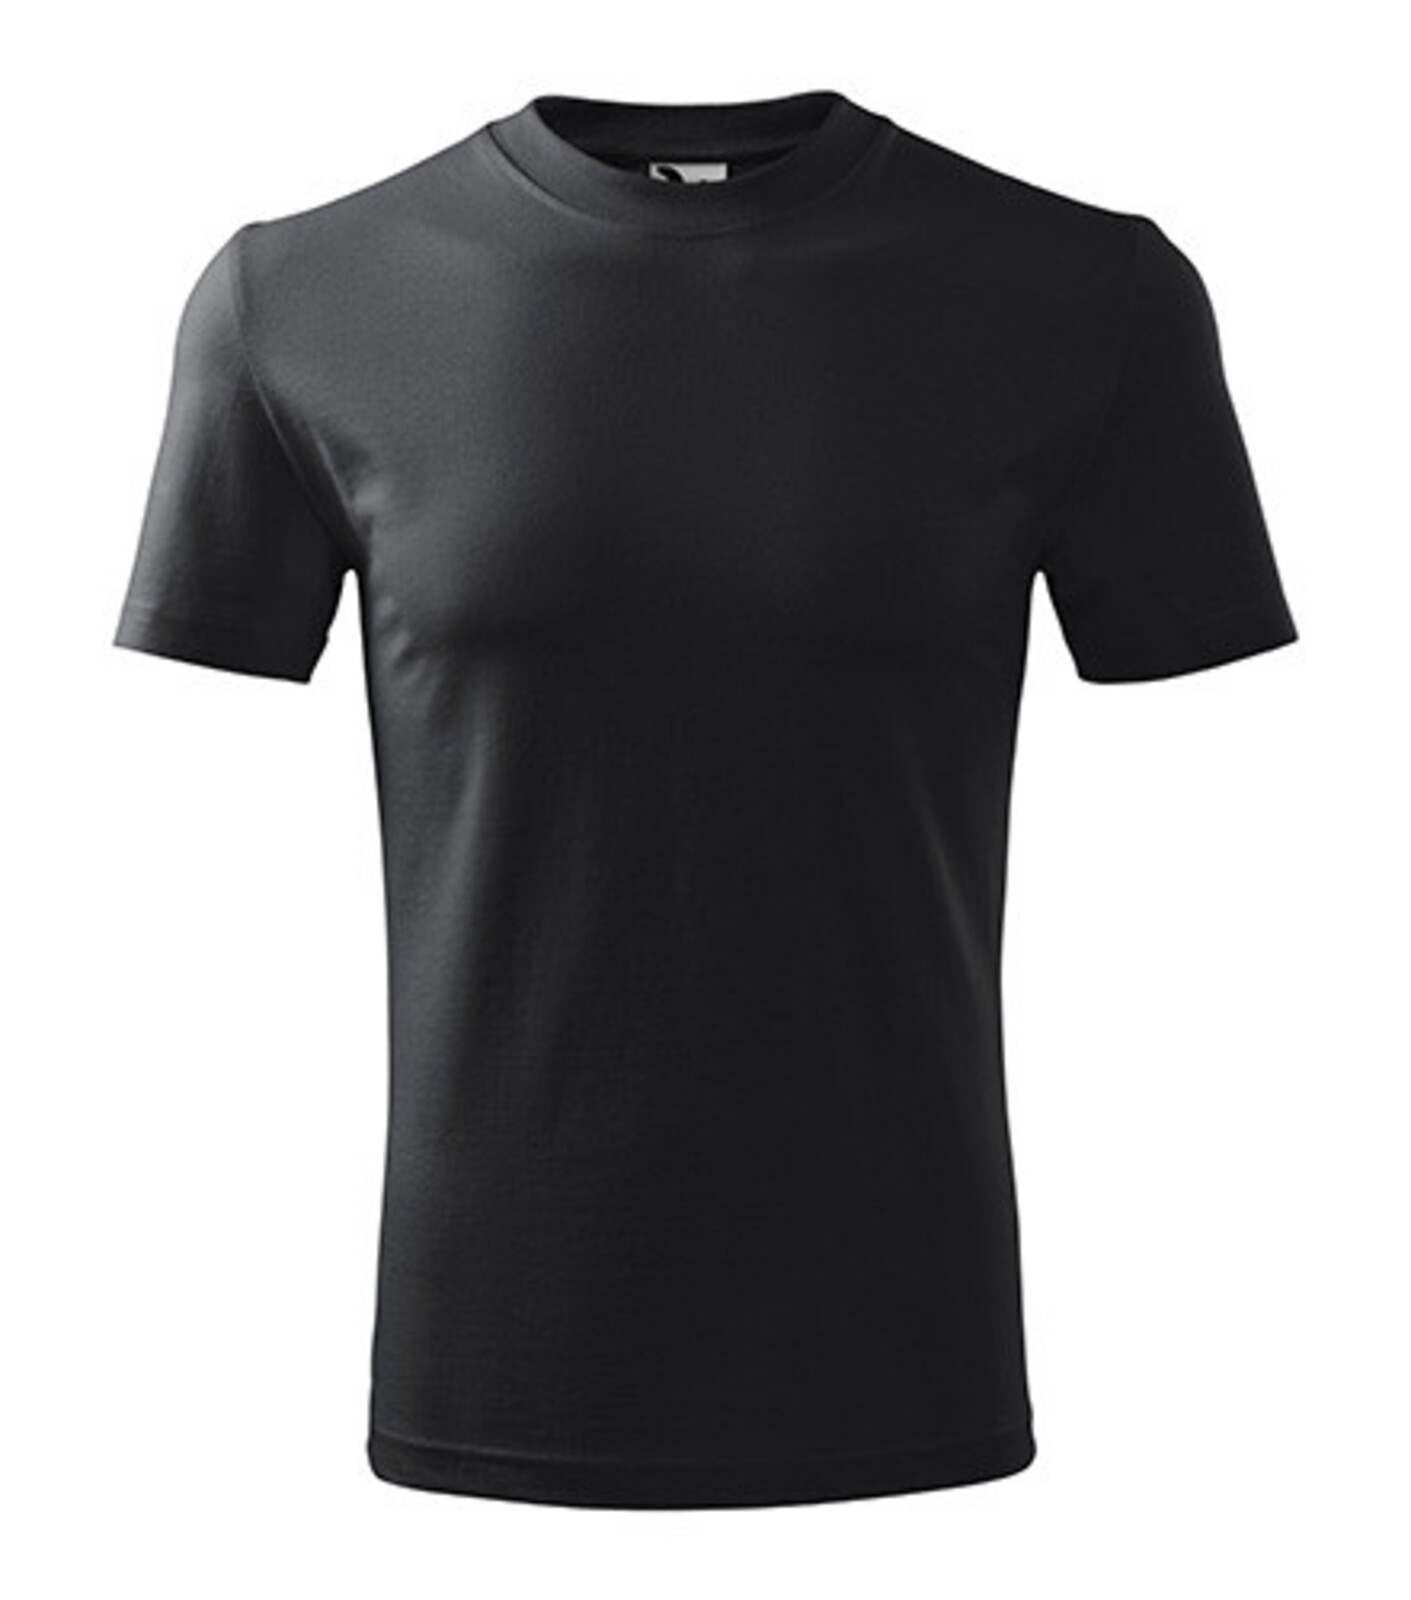 Unisex tričko Malfini Heavy 110 - veľkosť: M, farba: ebony grey